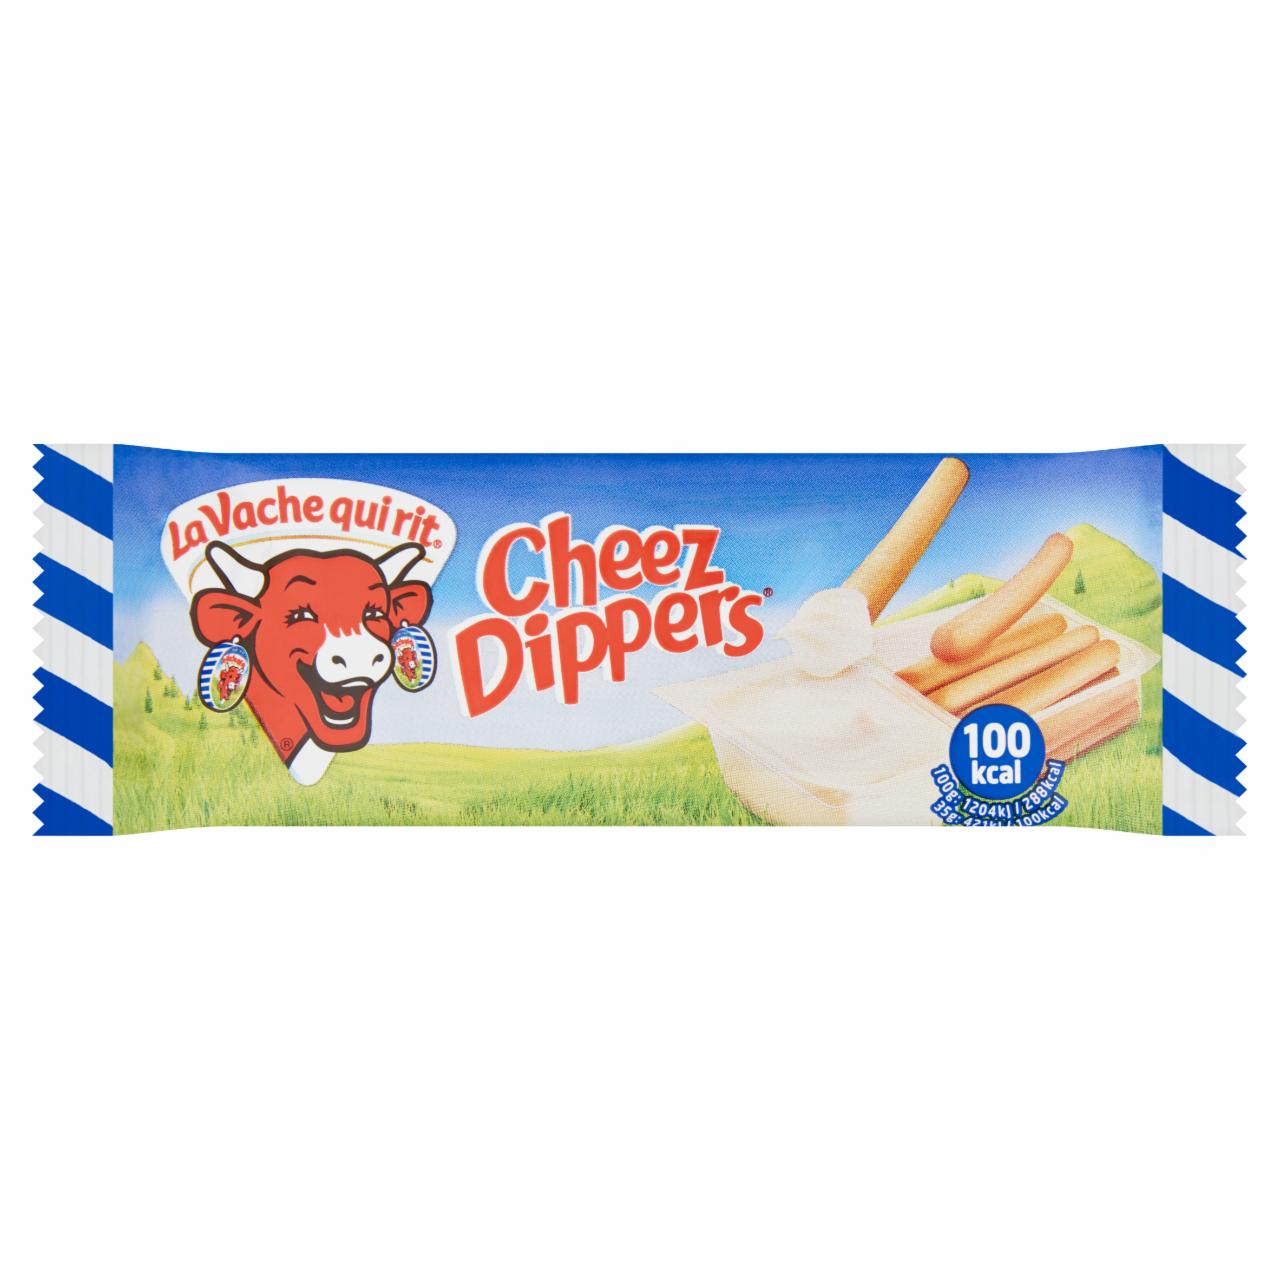 Képek - La Vache Qui Rit Cheez Dippers ömlesztett kenhető zsíros sajtkészítmény, kenyérrudacskákkal 35 g